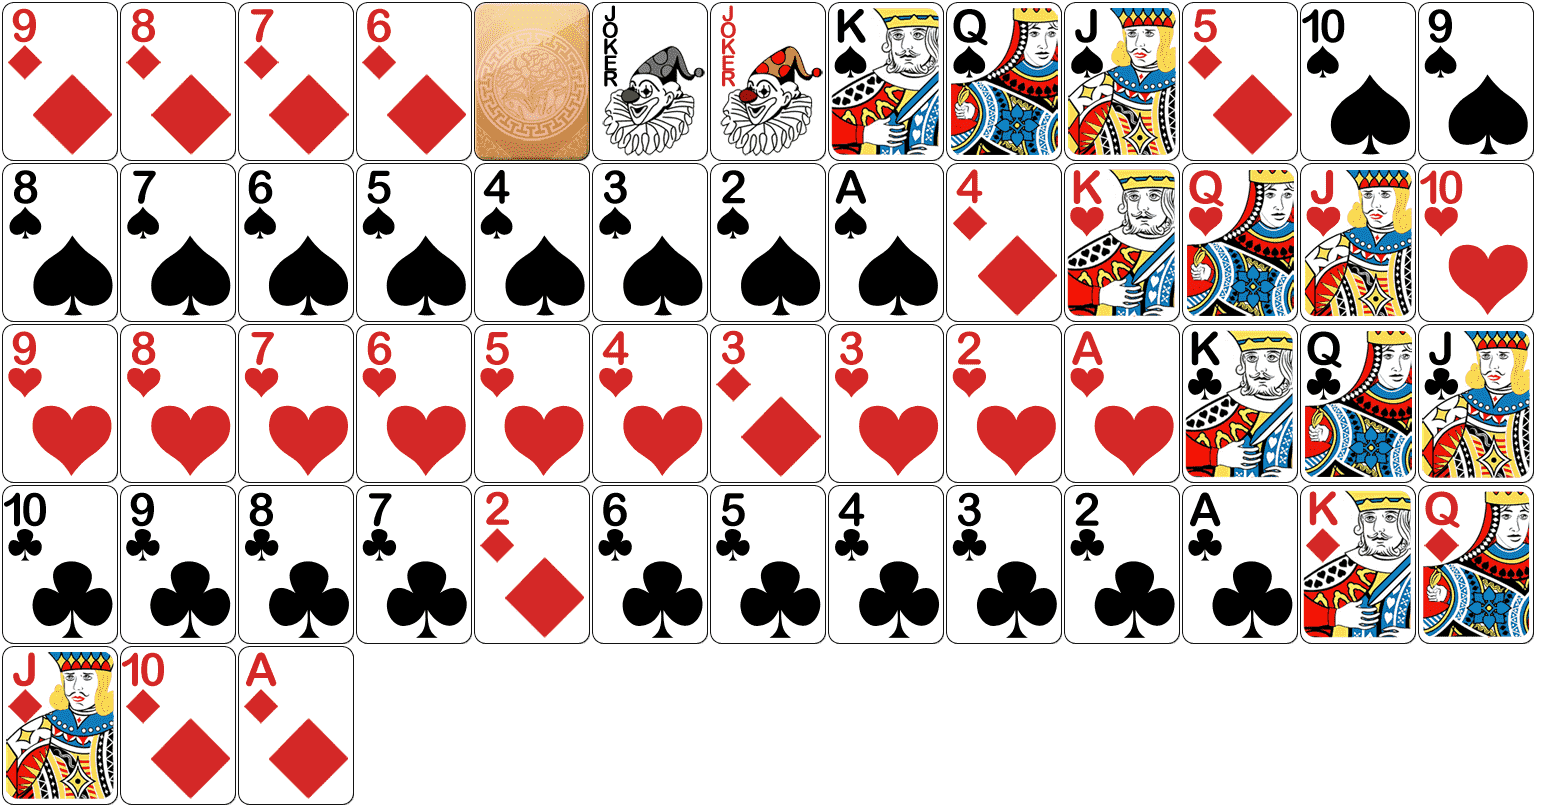 [教你做小游戏] 展示斗地主扑克牌,支持按出牌规则排序!